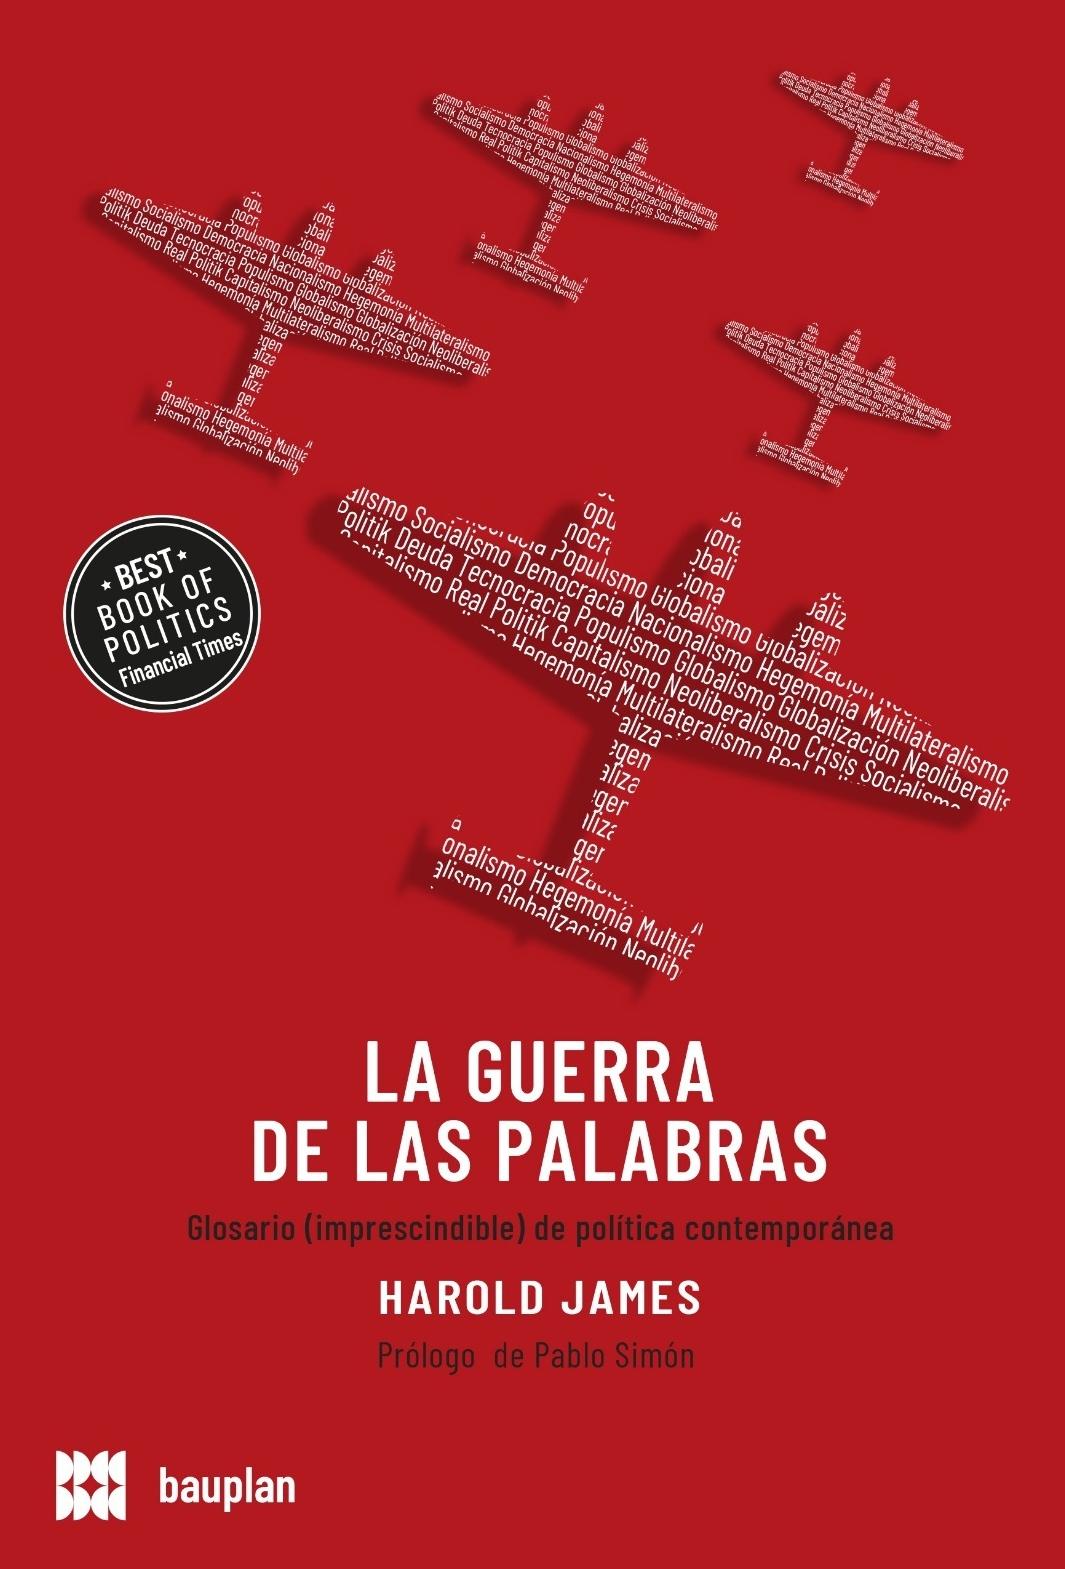 La Guerra de las Palabras "Un Glosario (Imprescindible) de Política Contemporánea". 